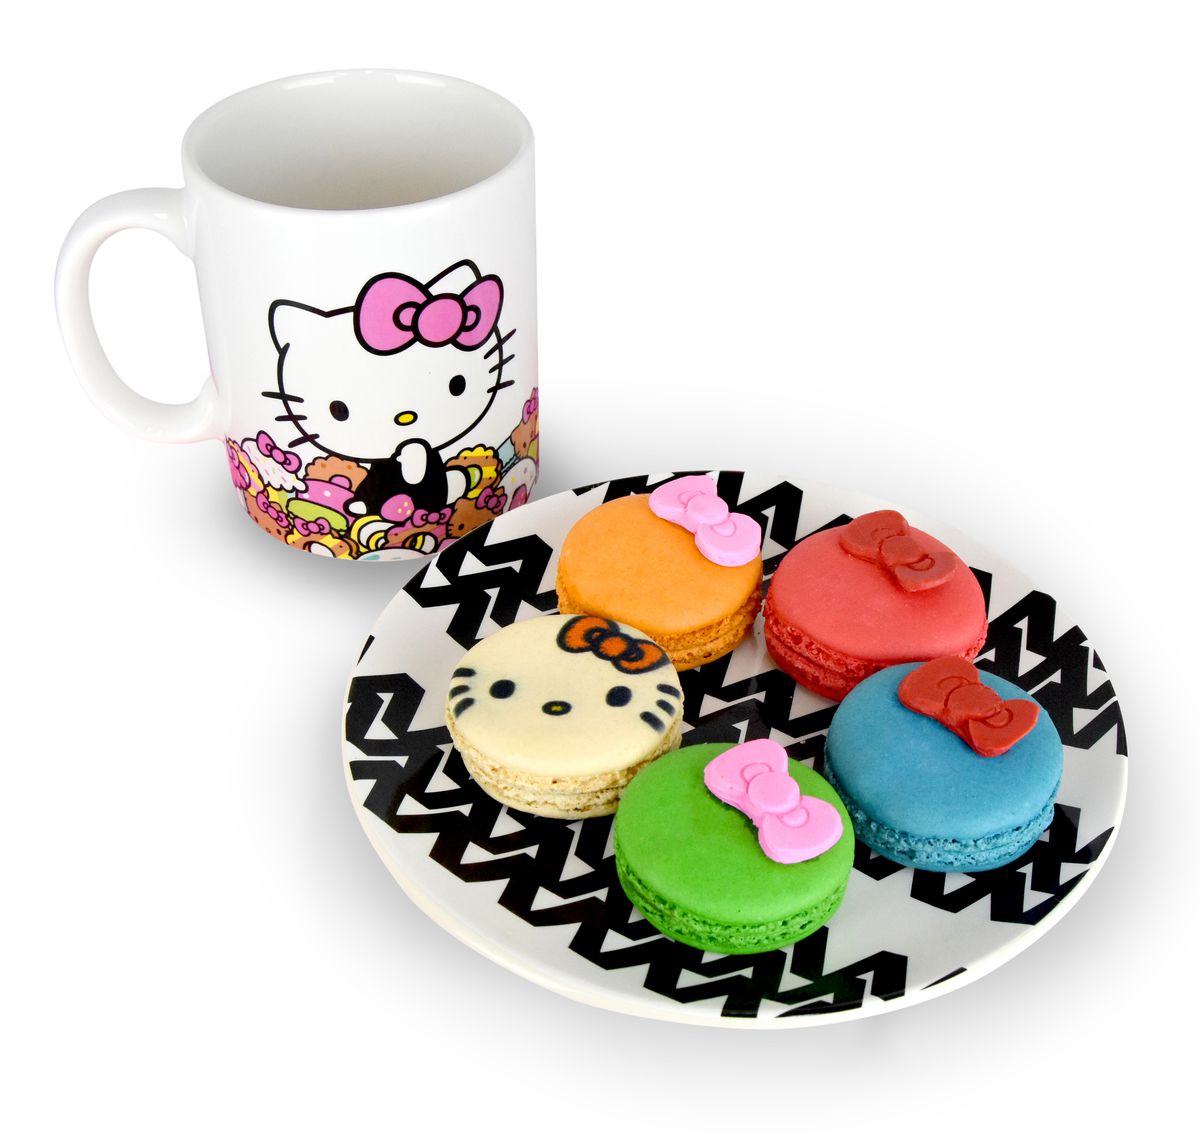 Hello Kitty mug and macarons